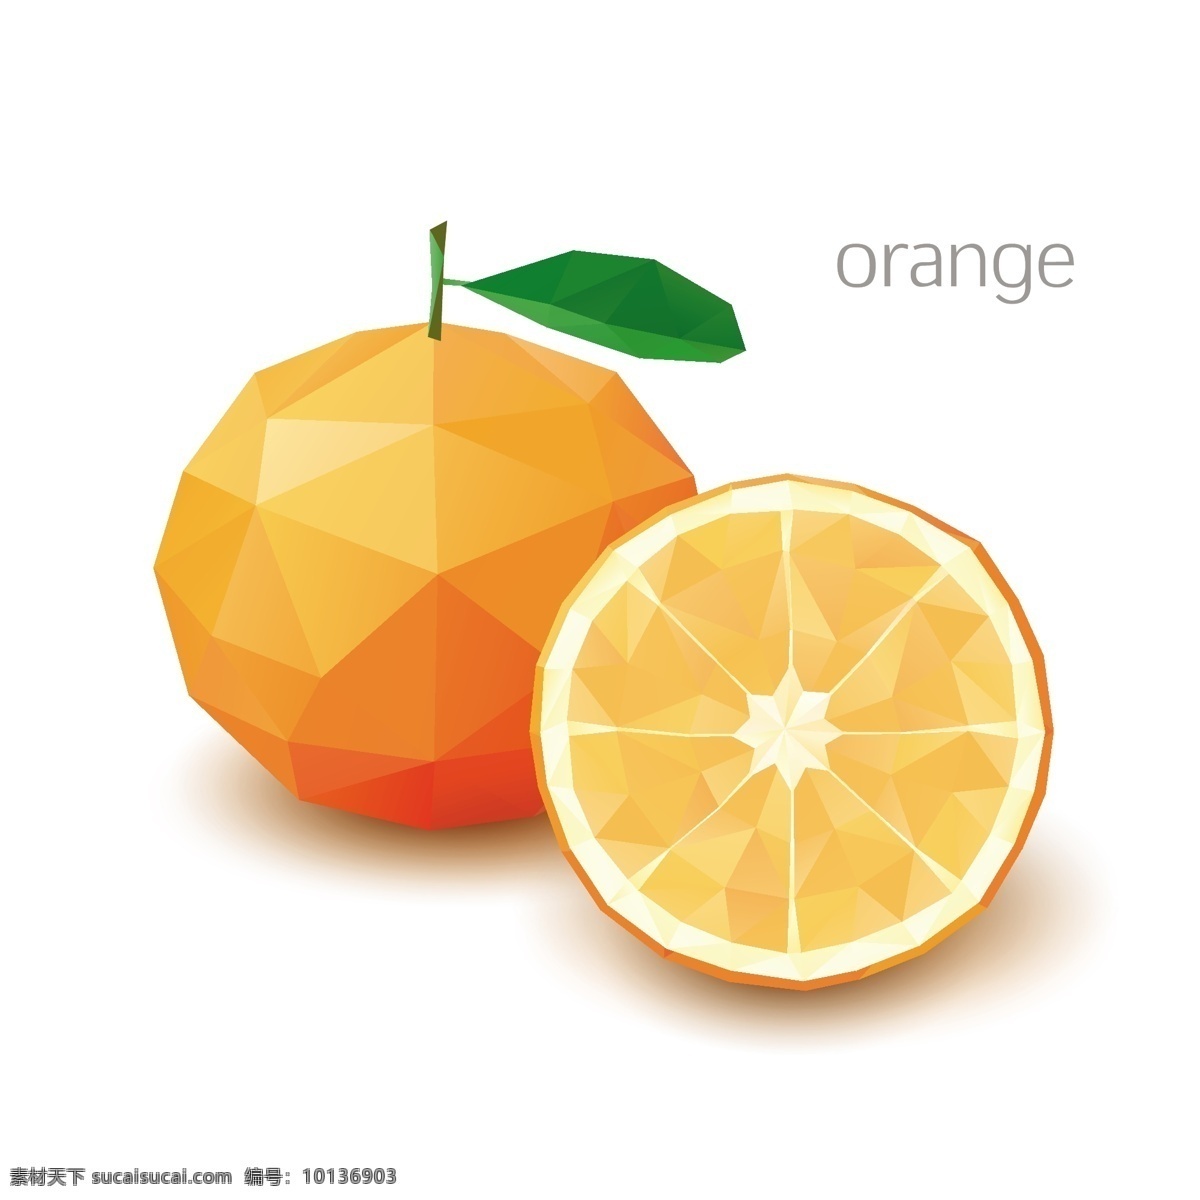 马赛克水果 水果 桔子 橙子 像素化 几何图案 创意设计 马赛克背景 三角形 多边形 不规则图案 卡通背景 抽象背景 生物世界 矢量